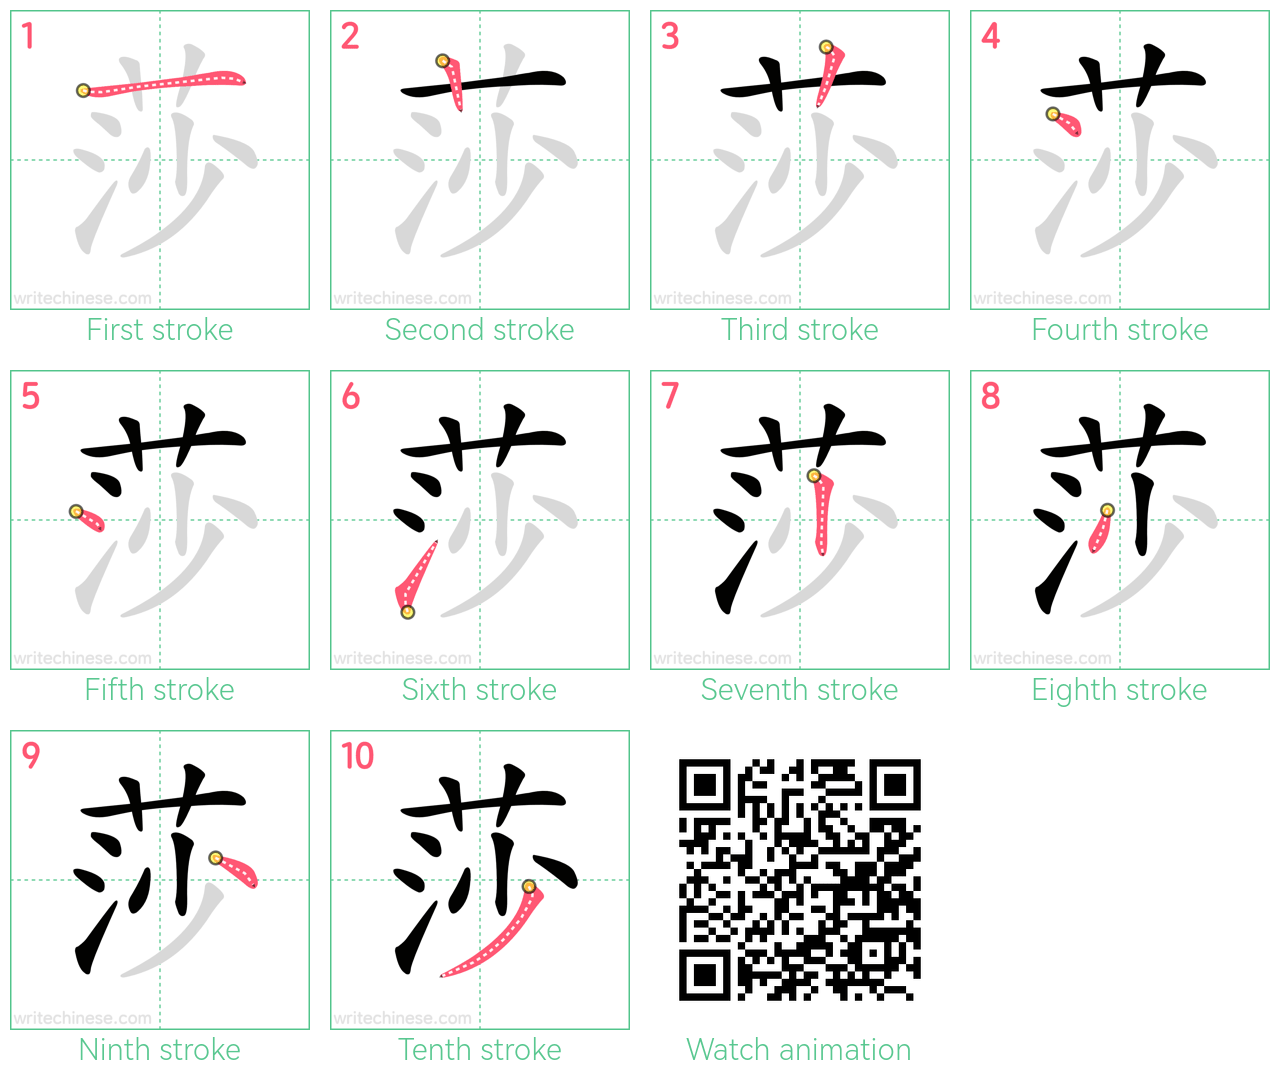 莎 step-by-step stroke order diagrams